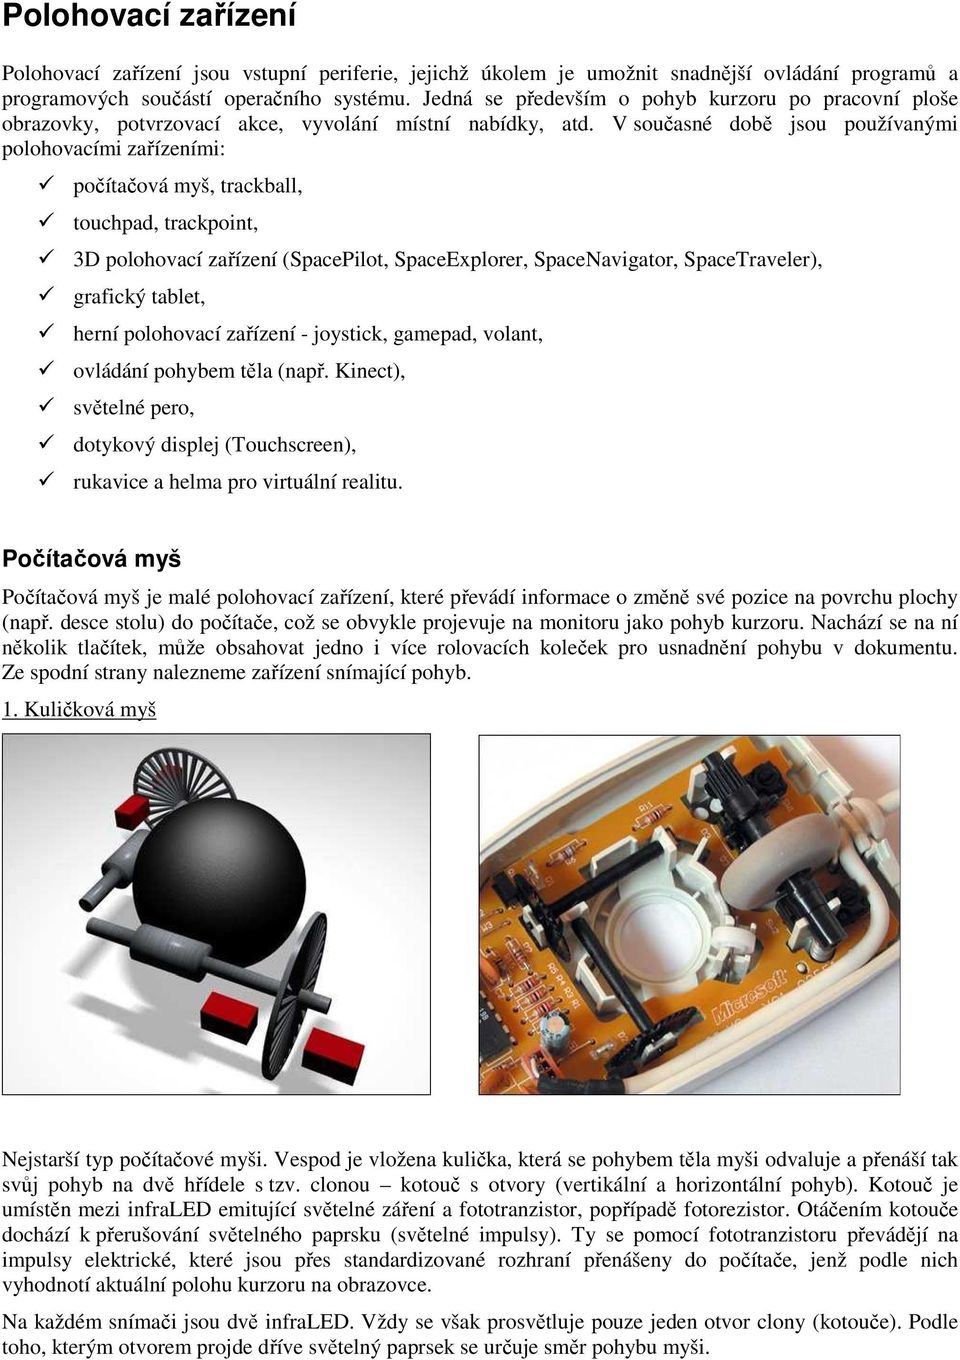 V současné době jsou používanými polohovacími zařízeními: počítačová myš, trackball, touchpad, trackpoint, 3D polohovací zařízení (SpacePilot, SpaceExplorer, SpaceNavigator, SpaceTraveler), grafický